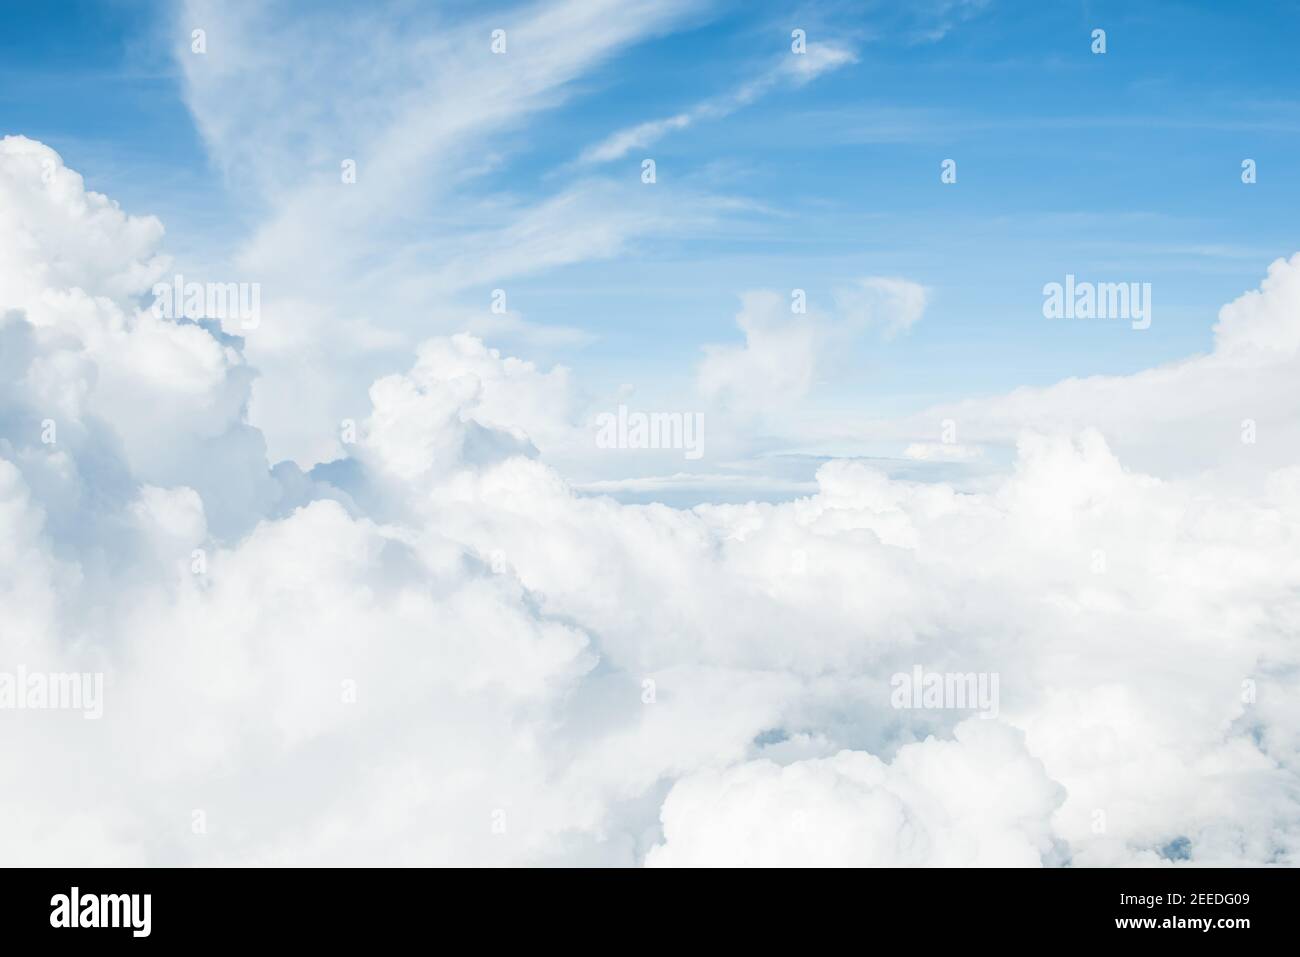 Bild von schönen weißen flauschigen Wolken in blauen Himmel, aus dem Flugzeug genommen Stockfoto